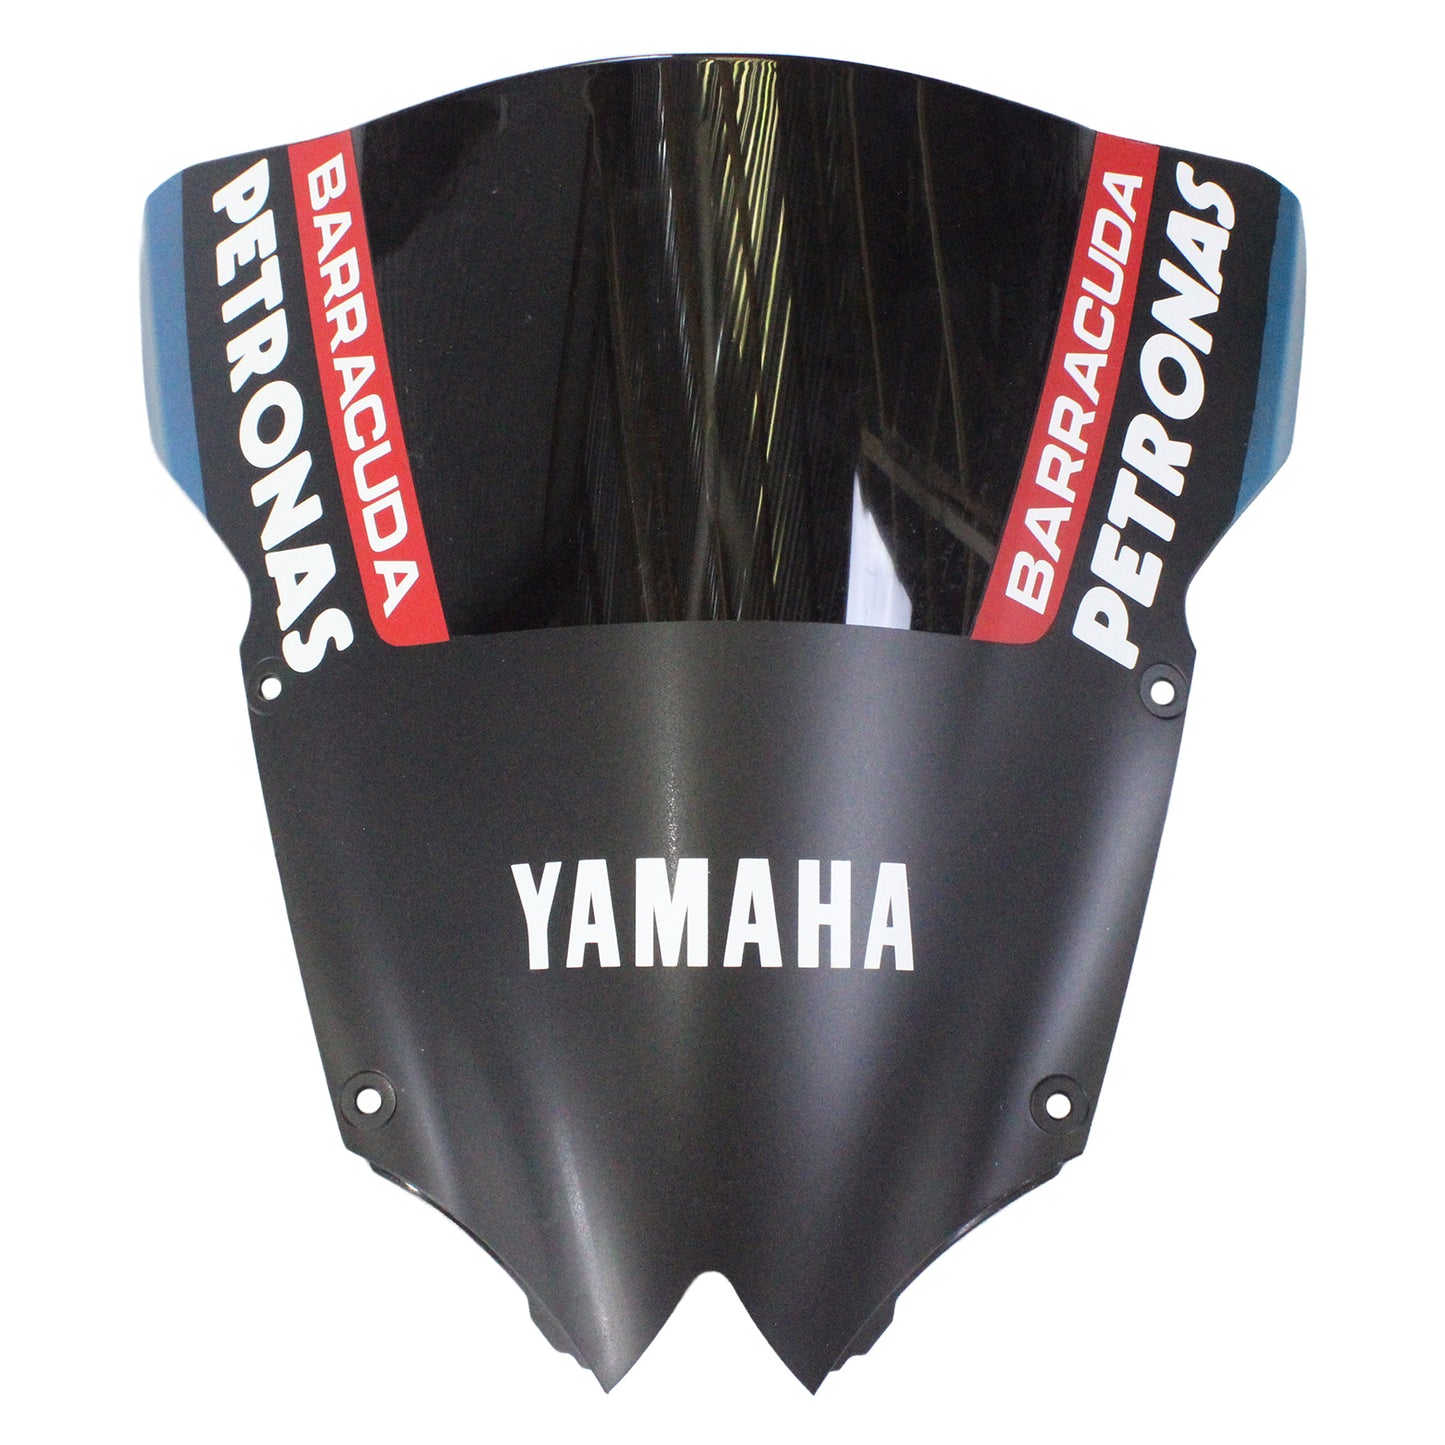 Amotopart Verkleidung fit für Yamaha YZF 600 R6 2008-2016